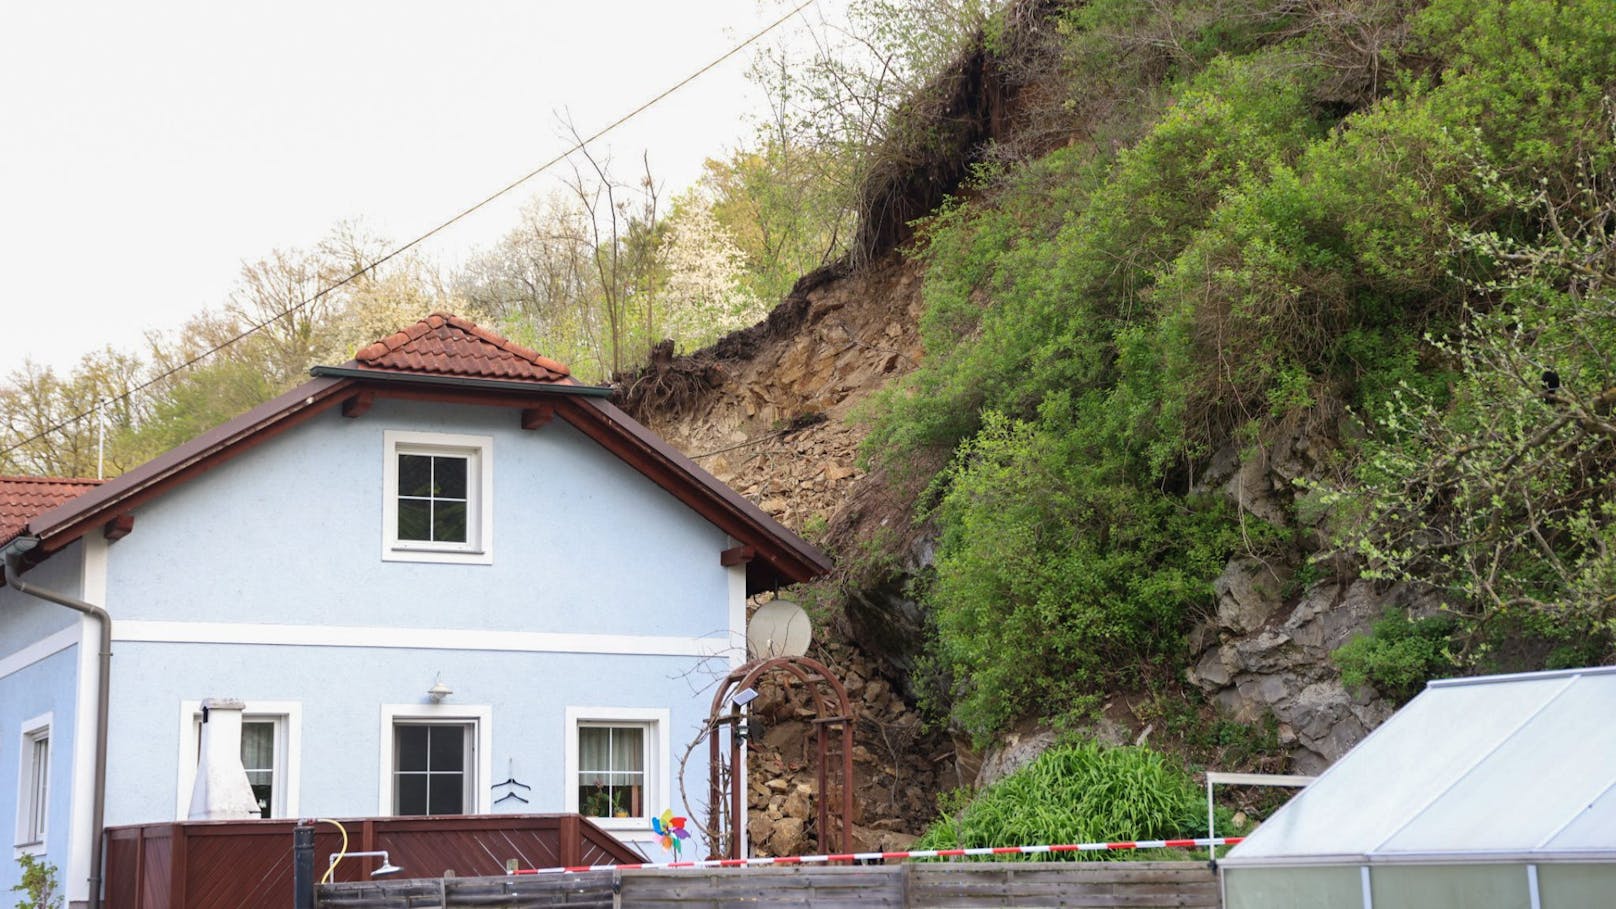 "Betreten verboten" – Haus nach Felssturz gesperrt